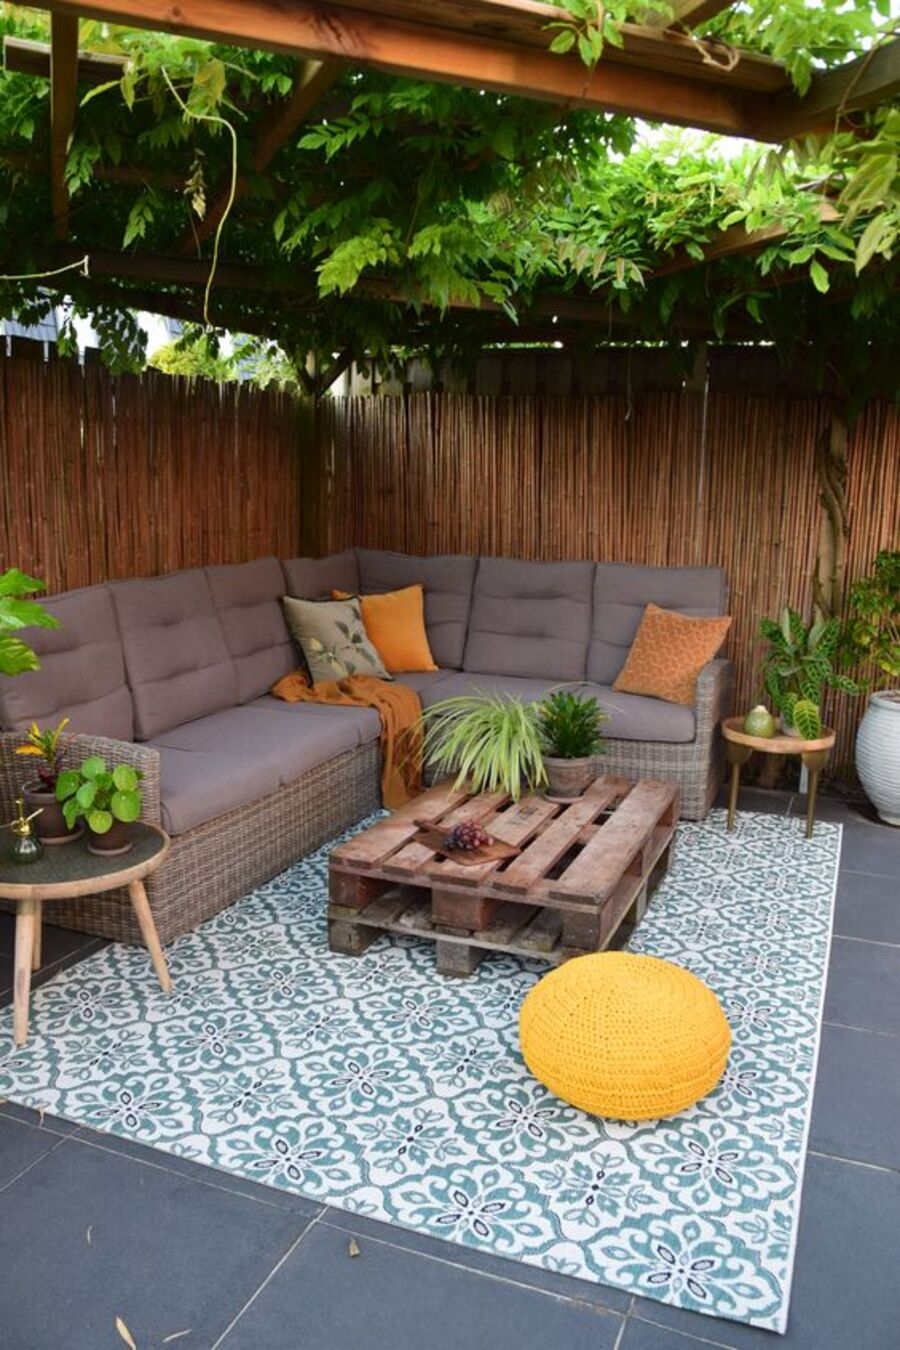 Terraza de un patio con árboles que dan sombra. El piso es gris oscuro y sobre él hay una alfombra blanca con diseño turquesa. Sobre ella hay una mesa de centro con pallets y un pouf amarillo y redondo. El sofá es seccional en forma de ele y tiene cojines grises y anaranjados.